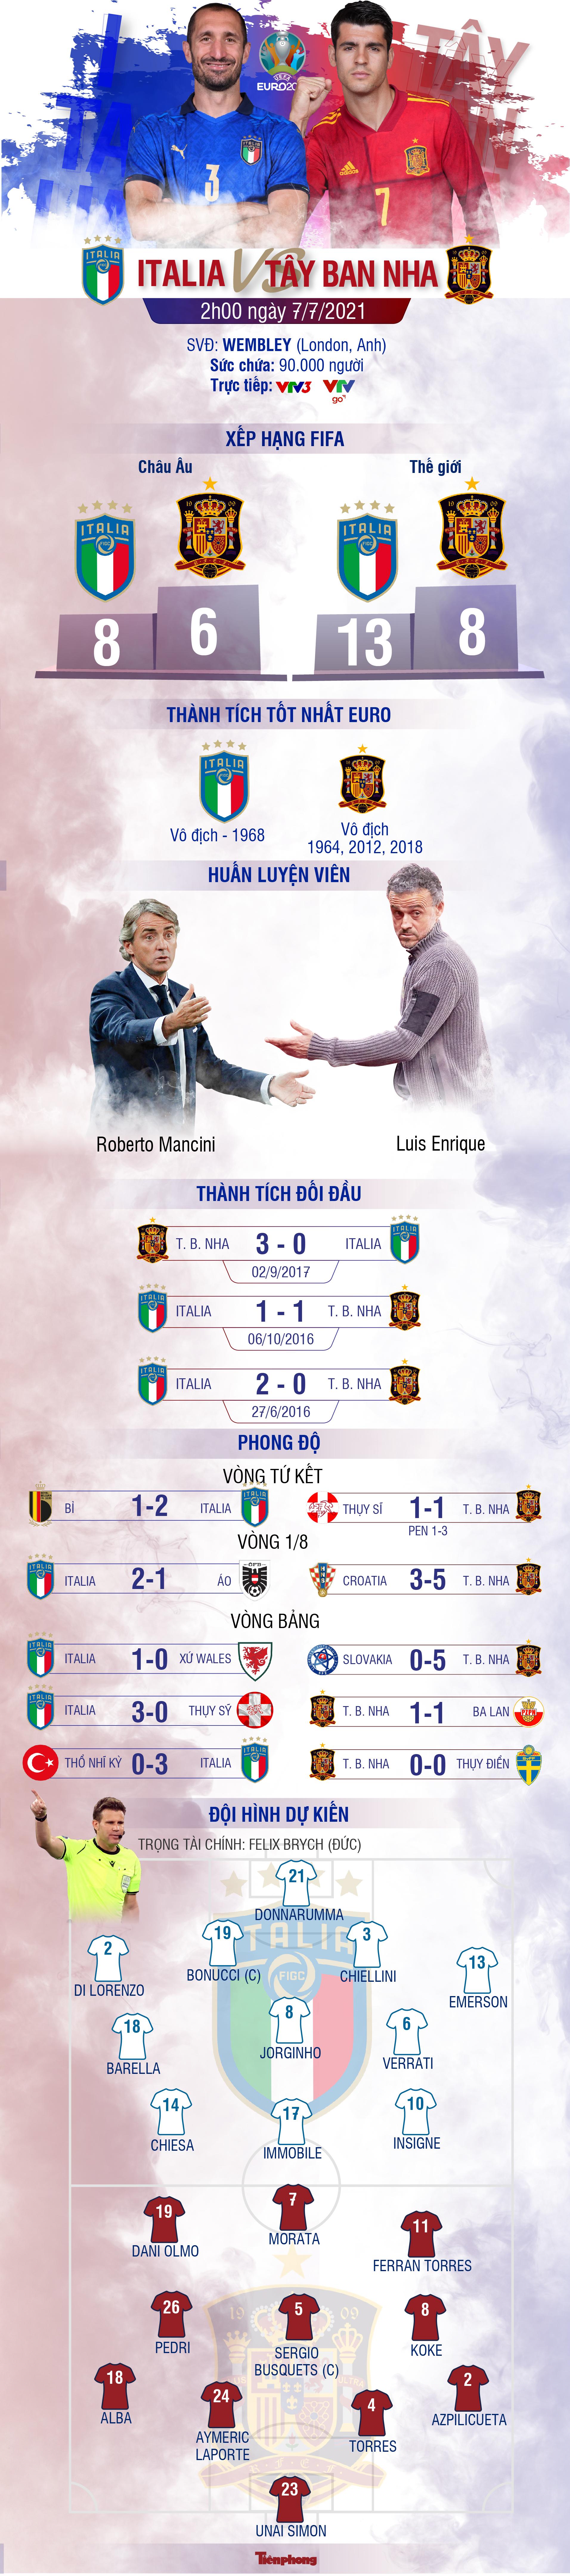 Tương quan trận bán kết Italia - Tây Ban Nha - Ảnh 1.